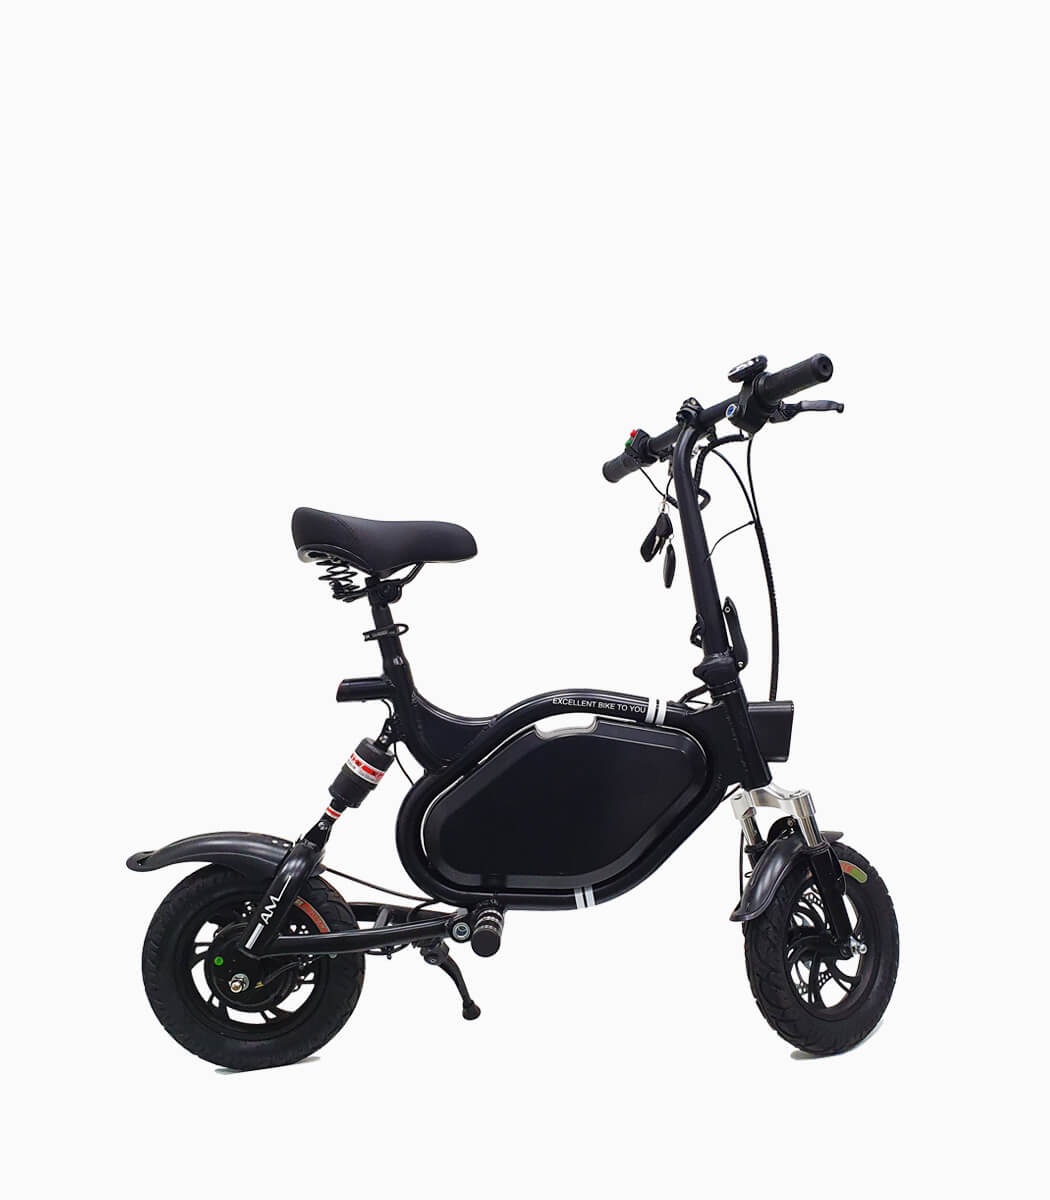 KNIGHT PRO 2 (BLACK21AH) UL2272 certified e-scooter right wheel turn